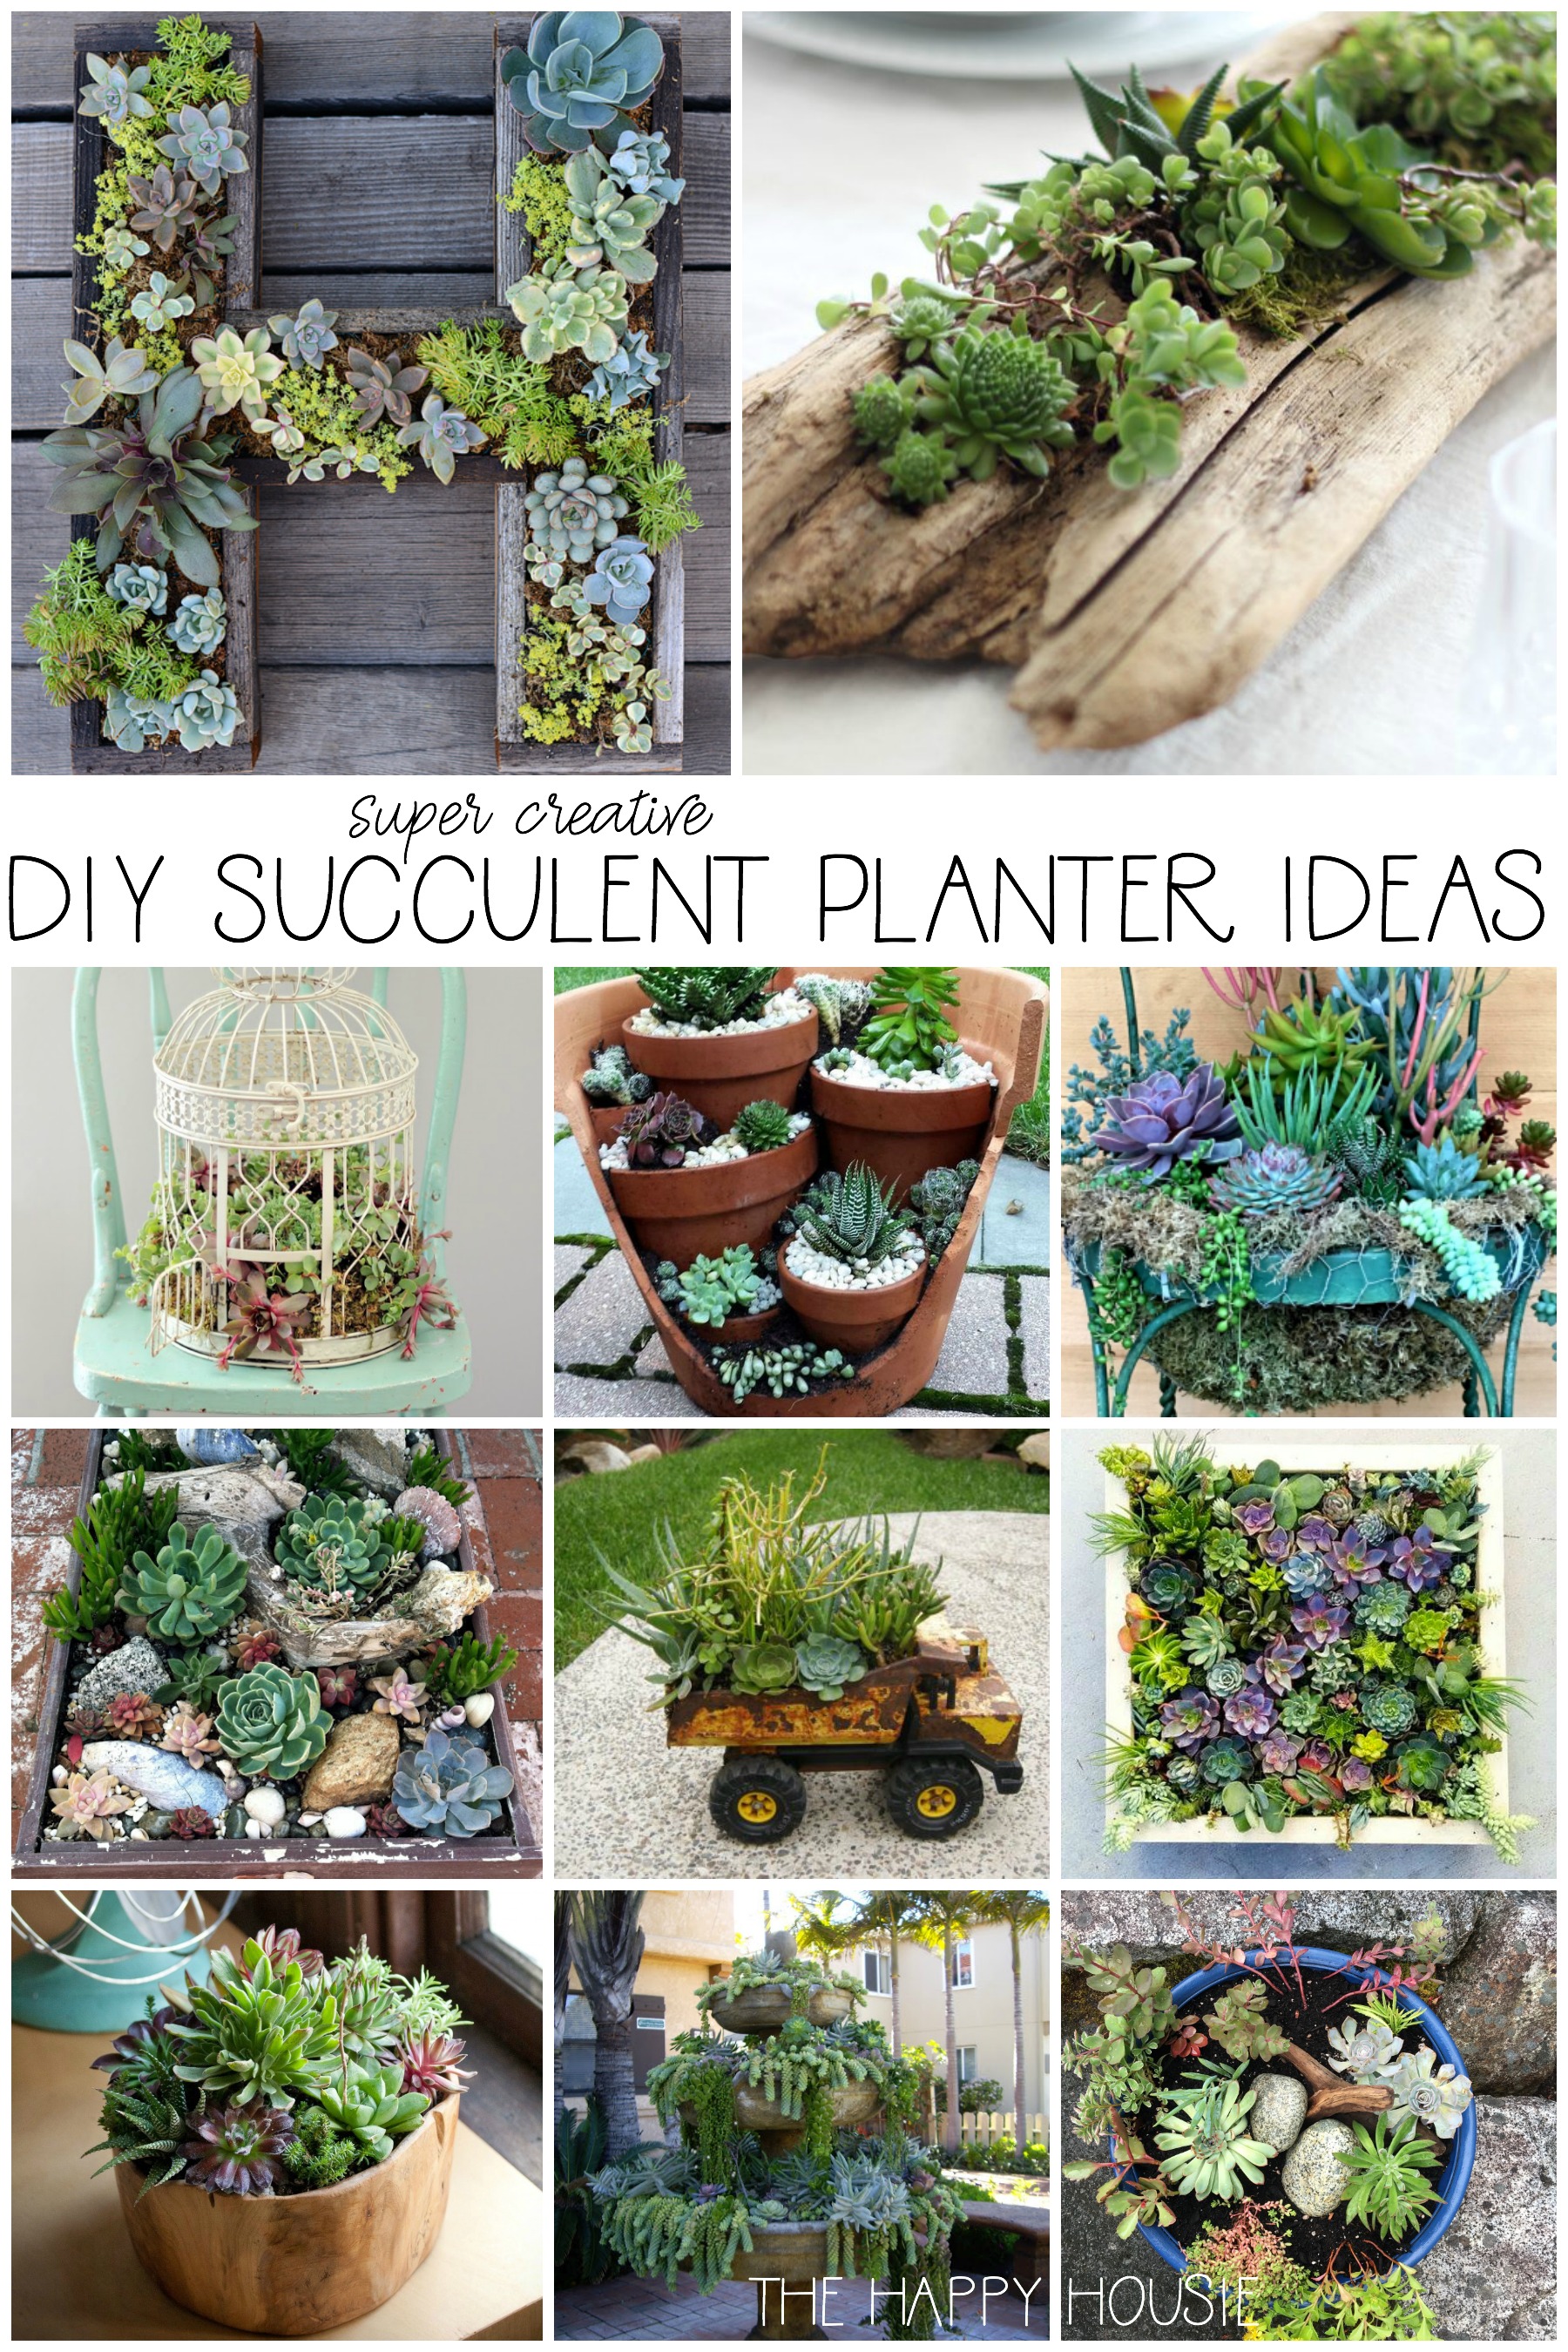 DIY succulent planter ideas graphic.